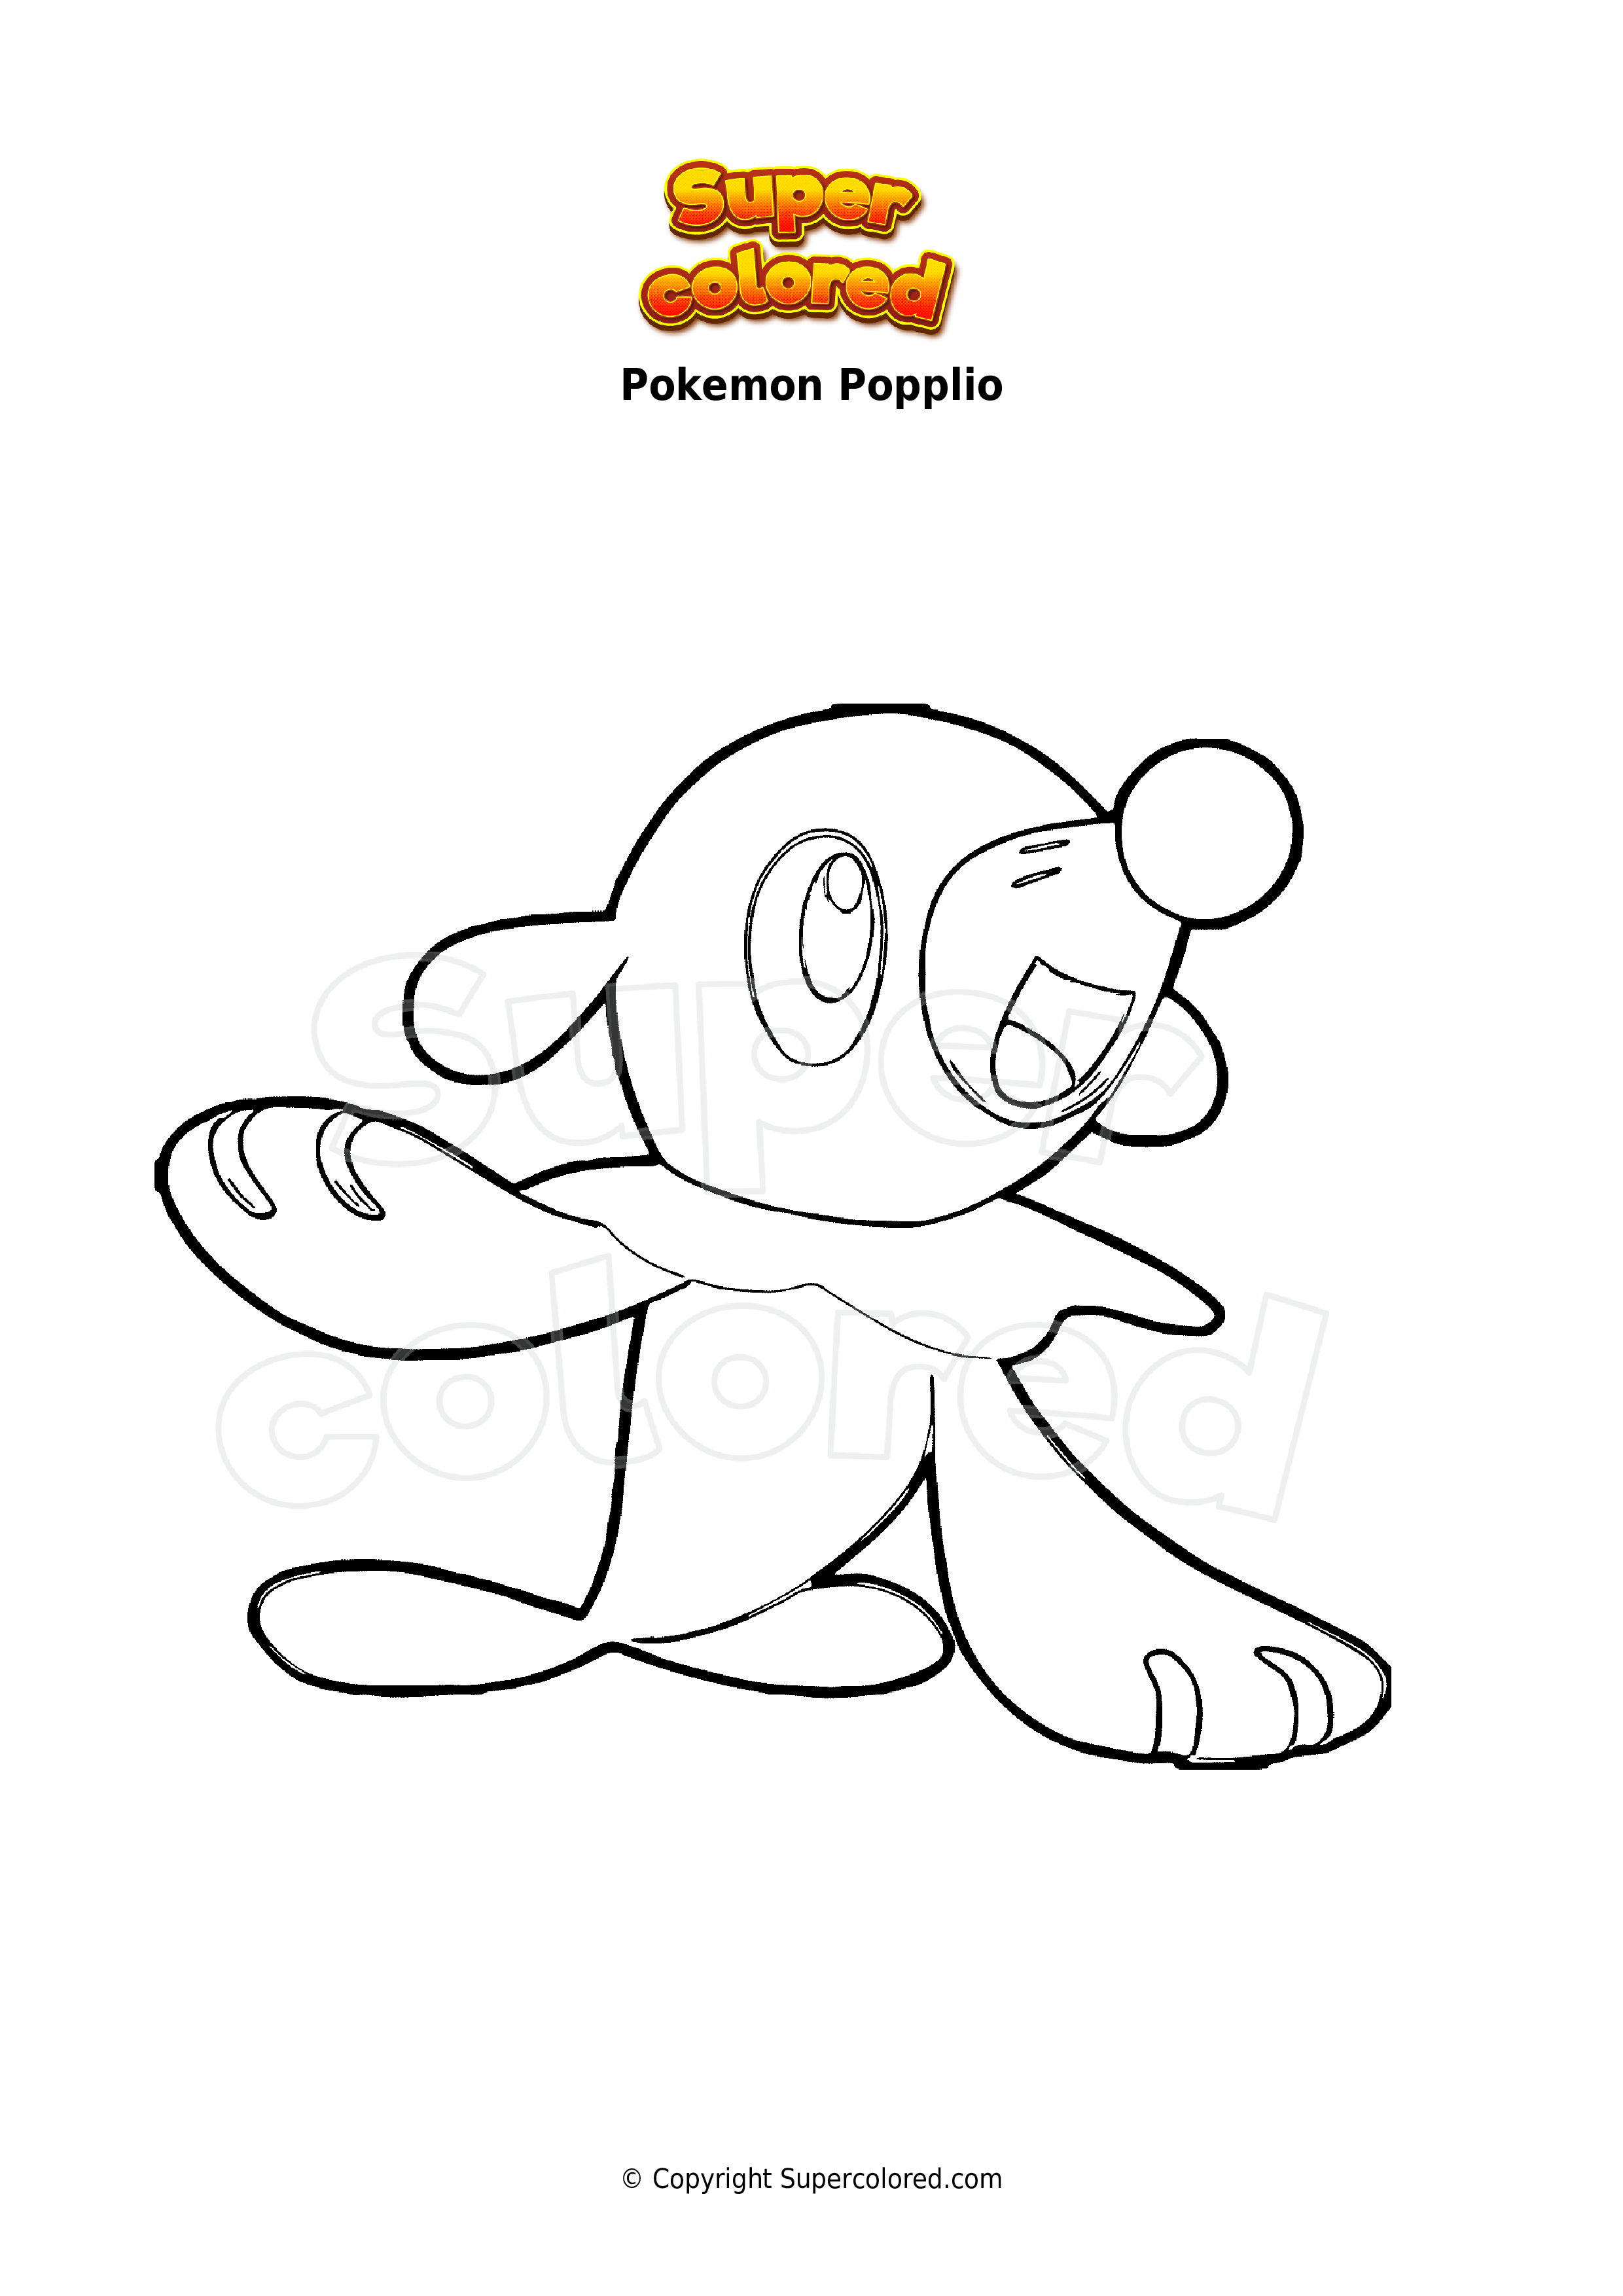 Coloring page Pokemon Popplio - Supercolored.com